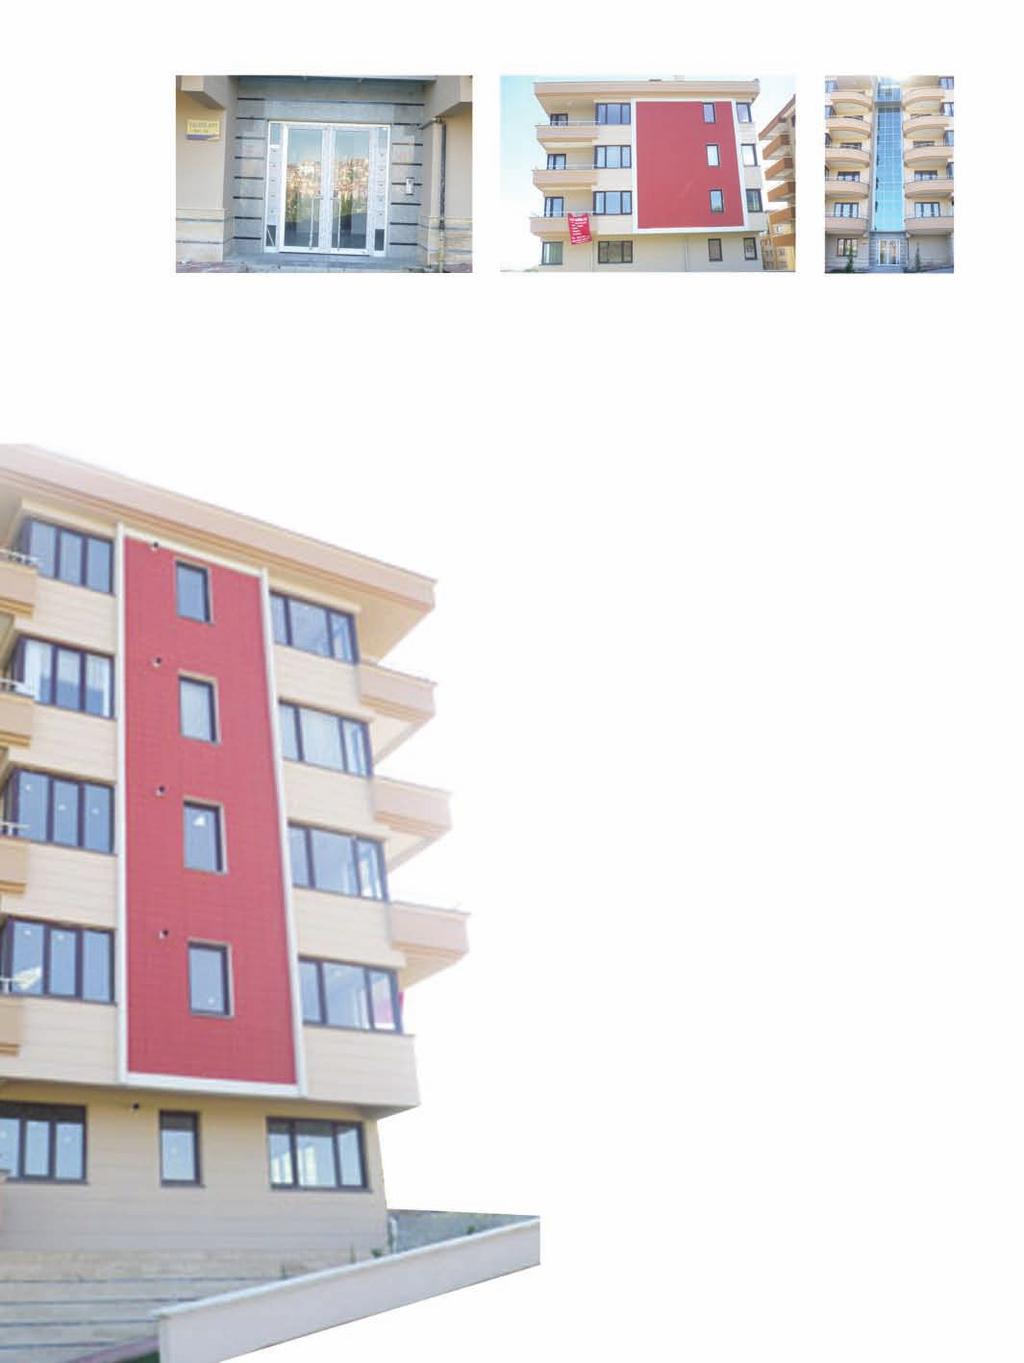 Yaldız Apartmanı Yaldız Apartment Building Proje Açıklaması: Ankara ili Çankaya ilçesinde Dikmen Vadisine bakan 180m 2, 4+1 kapalı ve açık otoparklı. DASK yönetmeliğine uygun konut inşaatı yapmıştır.